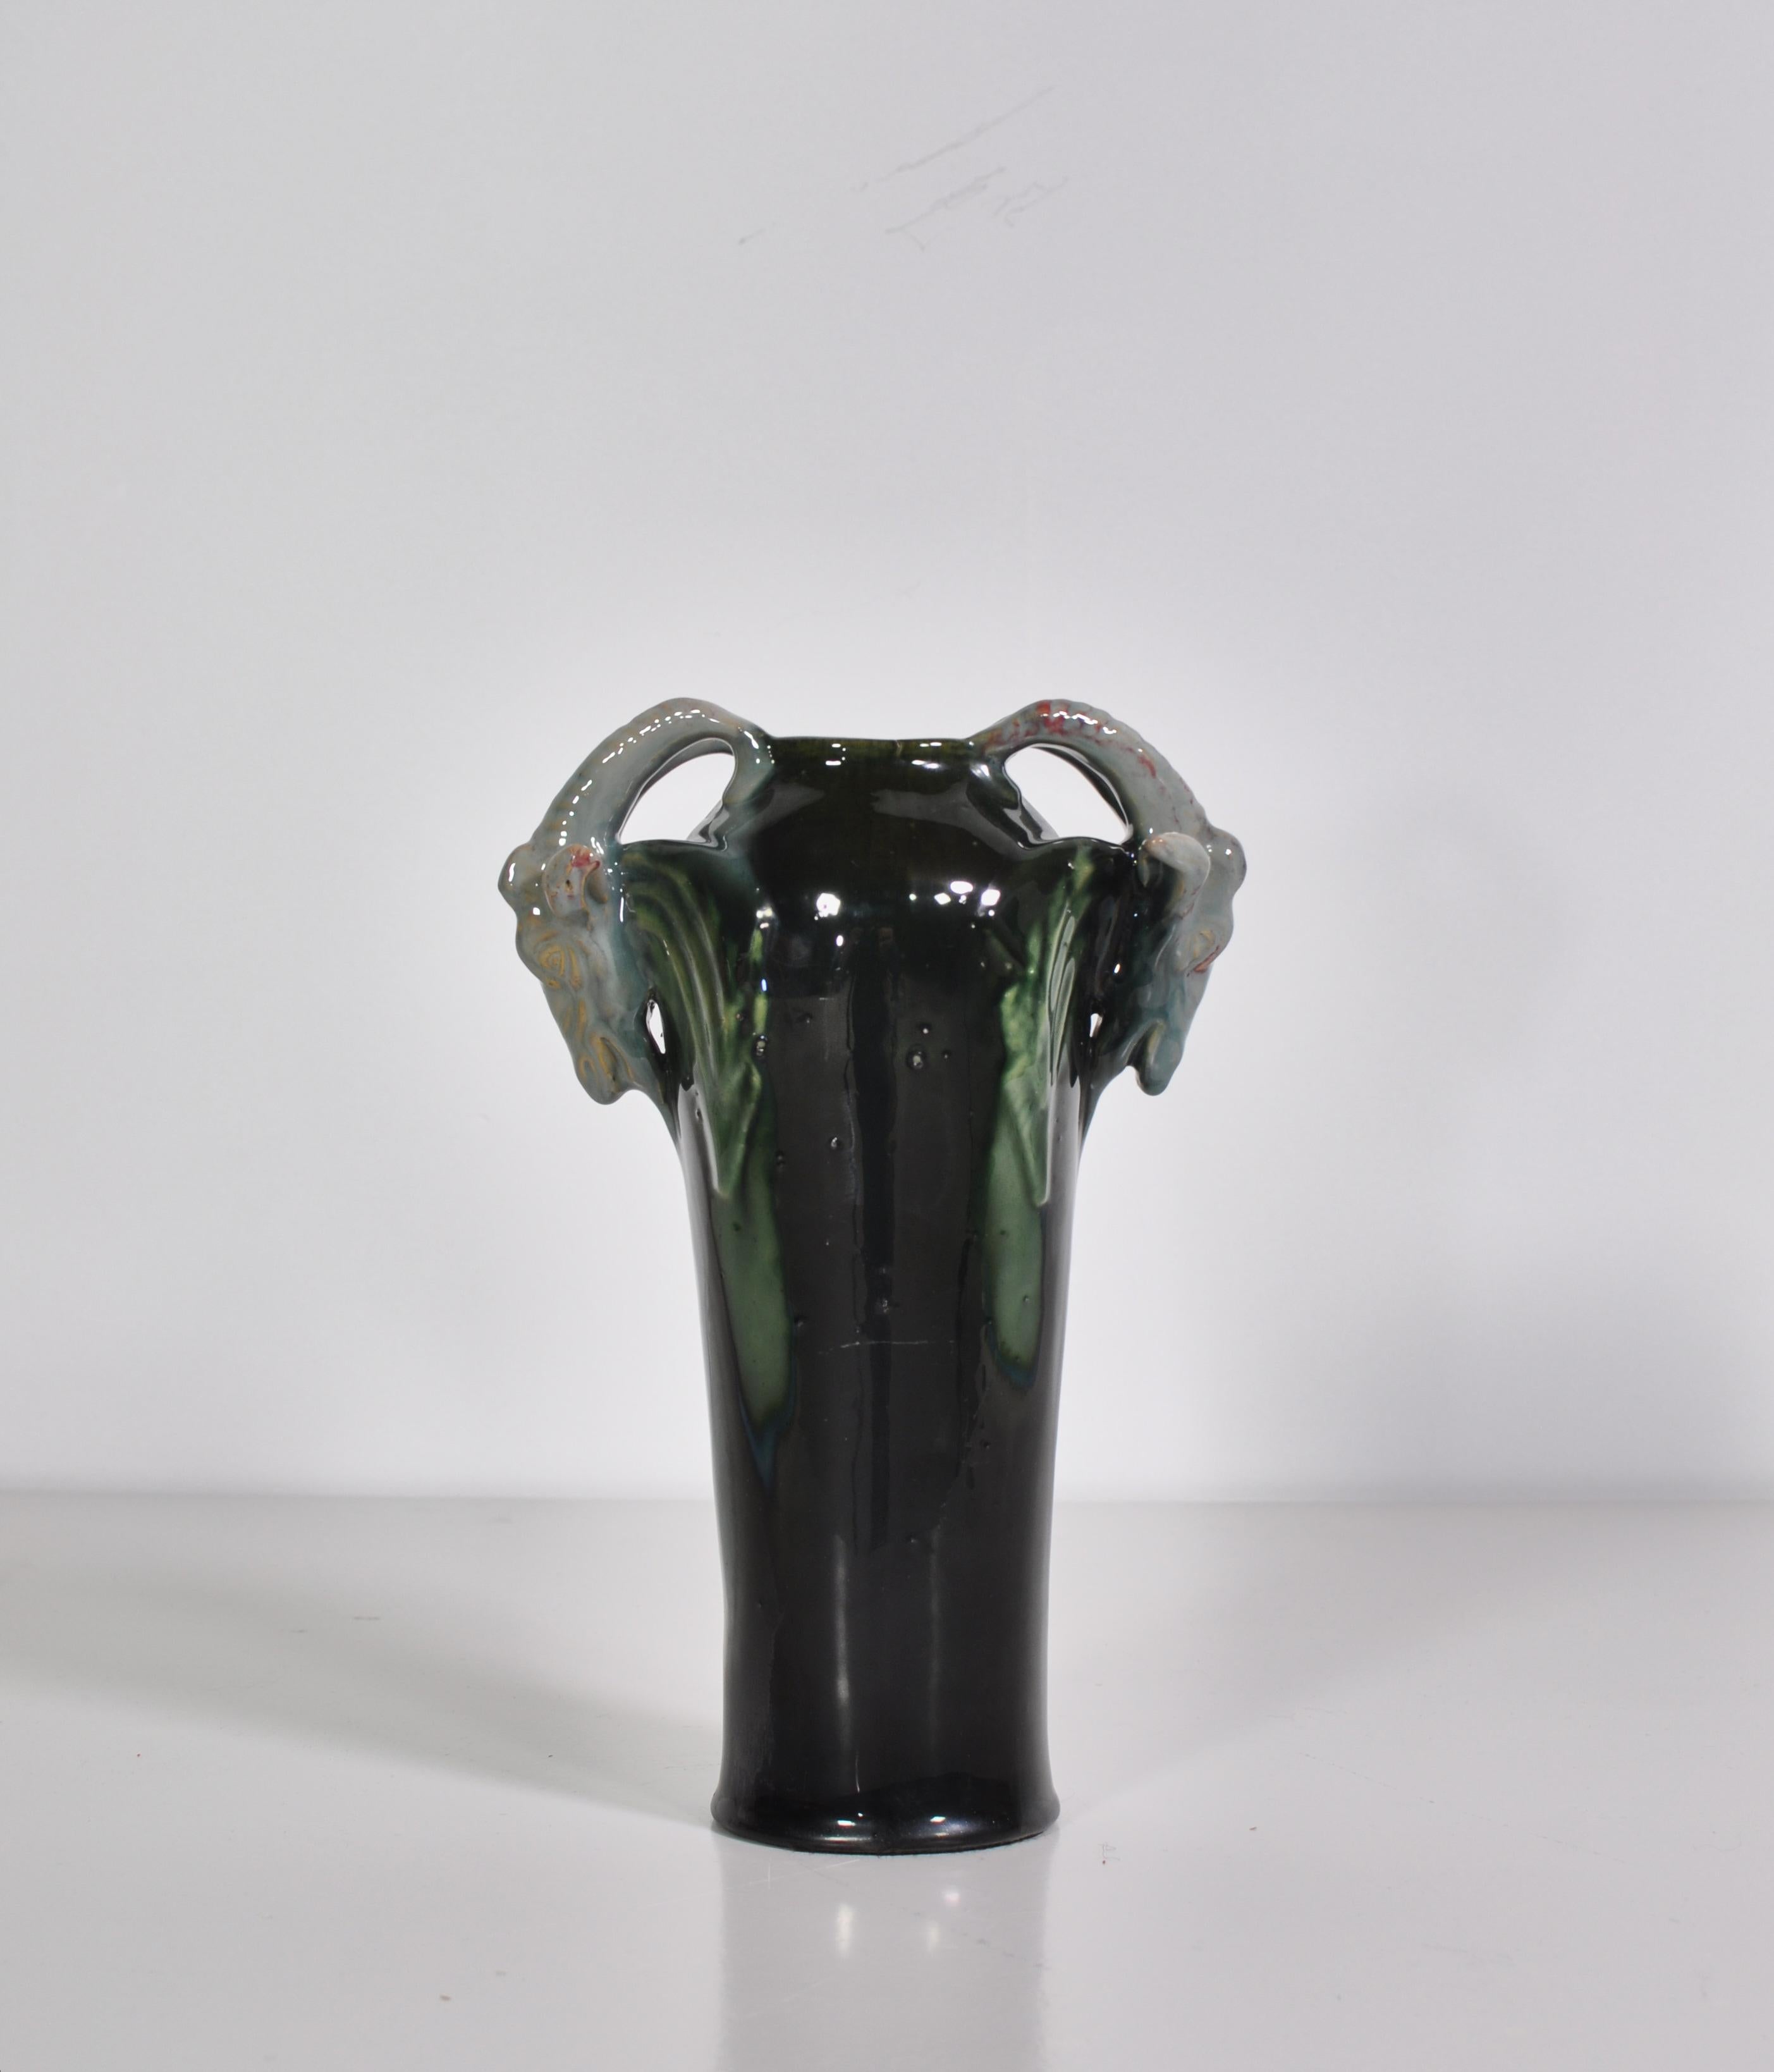 Schöne Jugendstilvase aus Steingut, die in den 1920er Jahren bei Michael Andersen & Son hergestellt wurde. Die Vase weist eine atemberaubende Glanzglasur in hellblauen, schwarzen und türkisen Farben auf und ist mit Widderköpfen verziert. Sehr guter